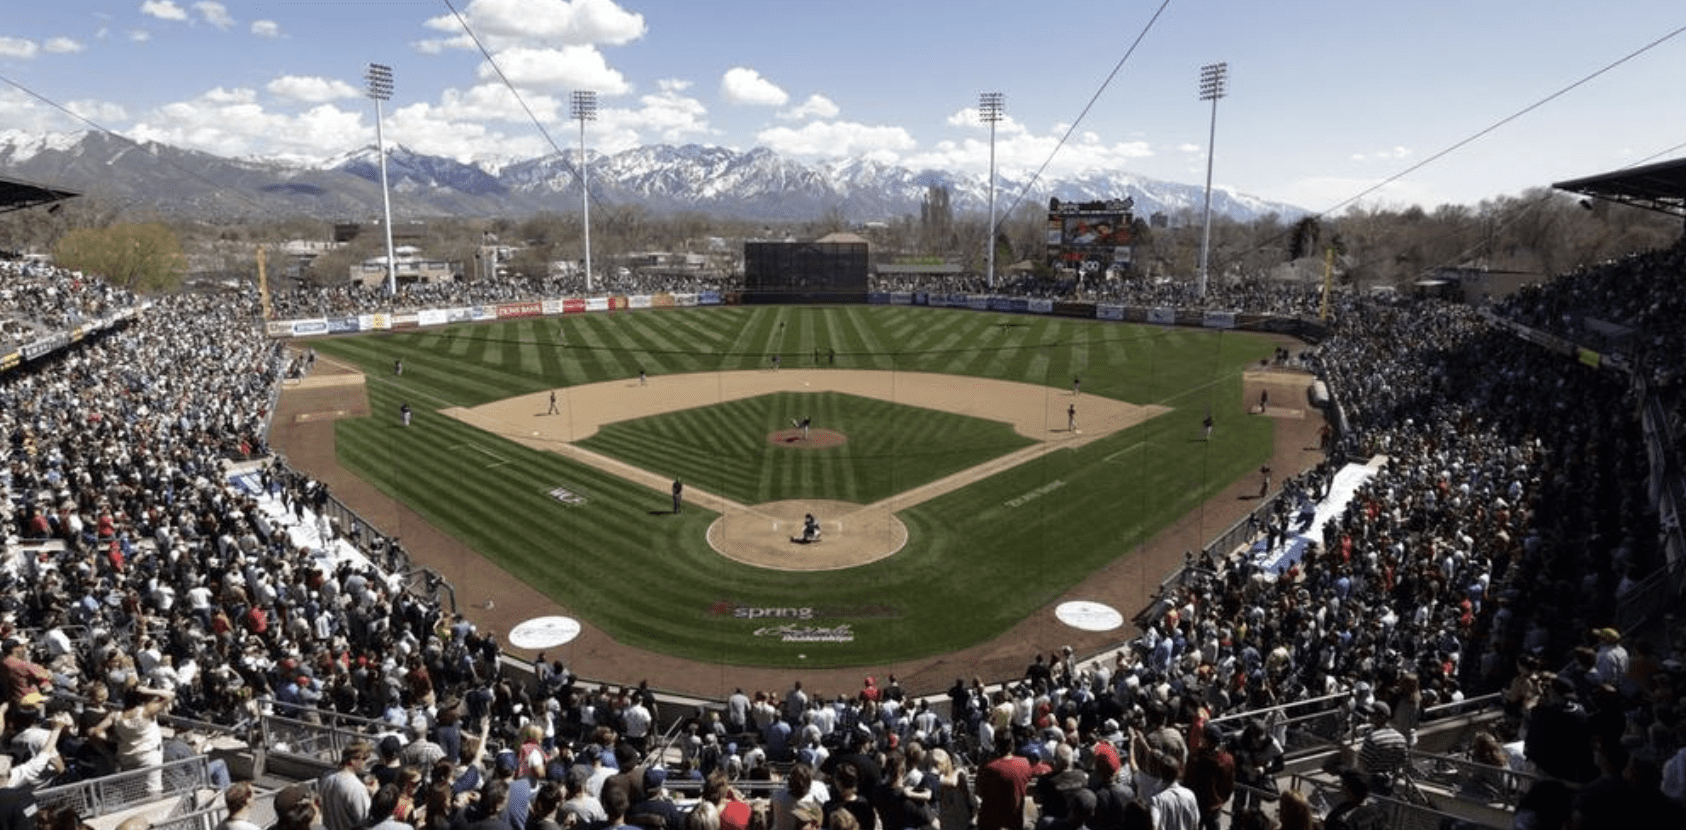 New Salt Lake Bees ballpark proposed for South Jordan - Ballpark